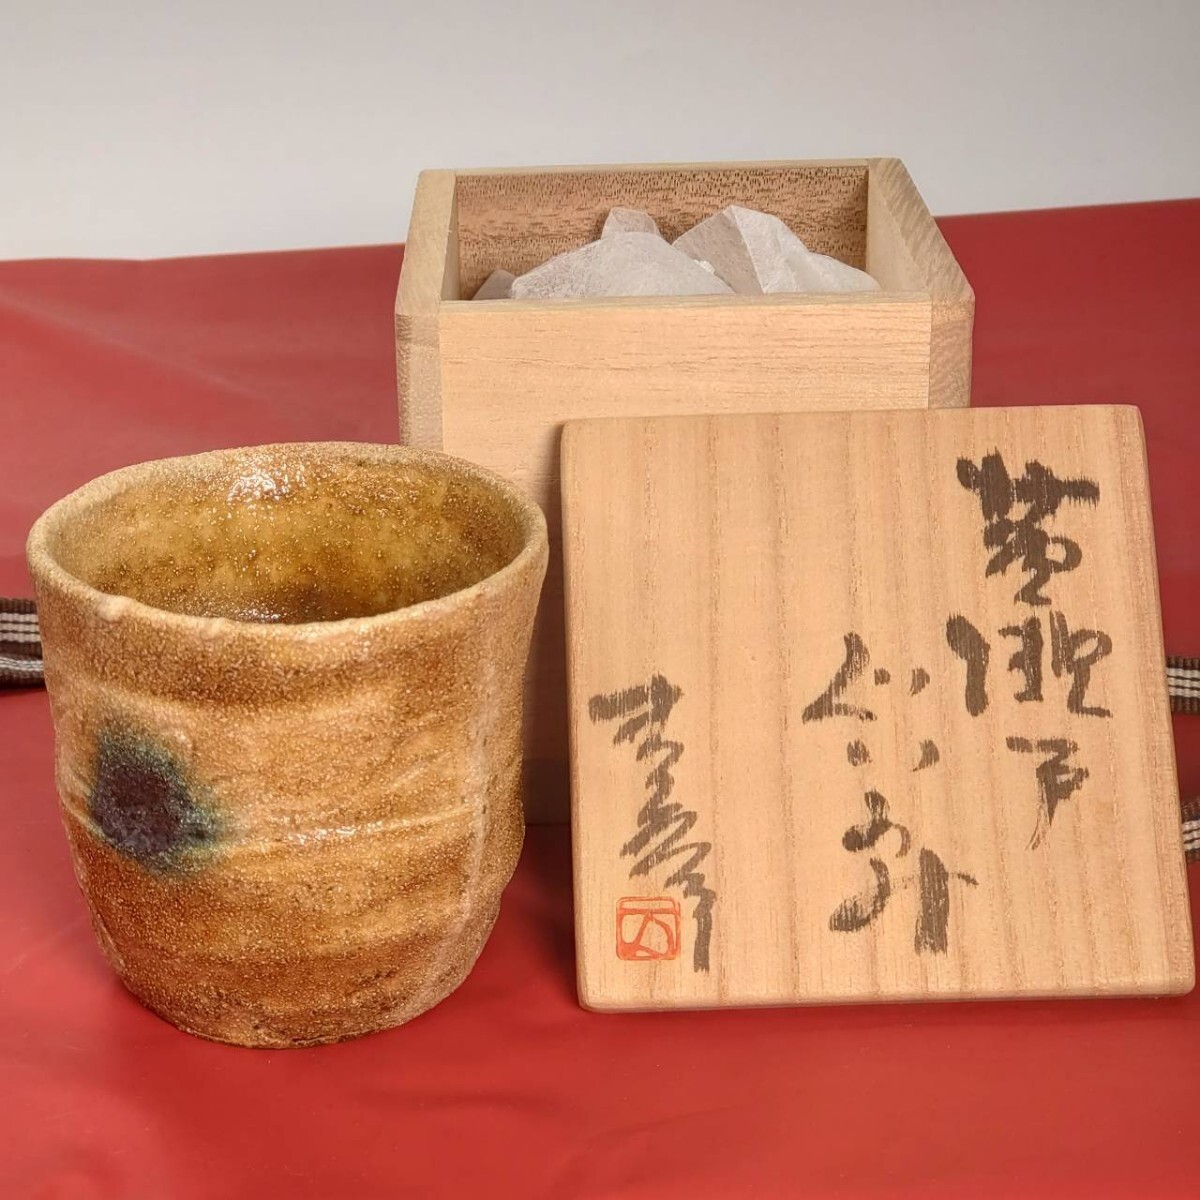 (A4) 米田 満太郎 ぐい呑 酒器 陶芸 古物品 62728-150